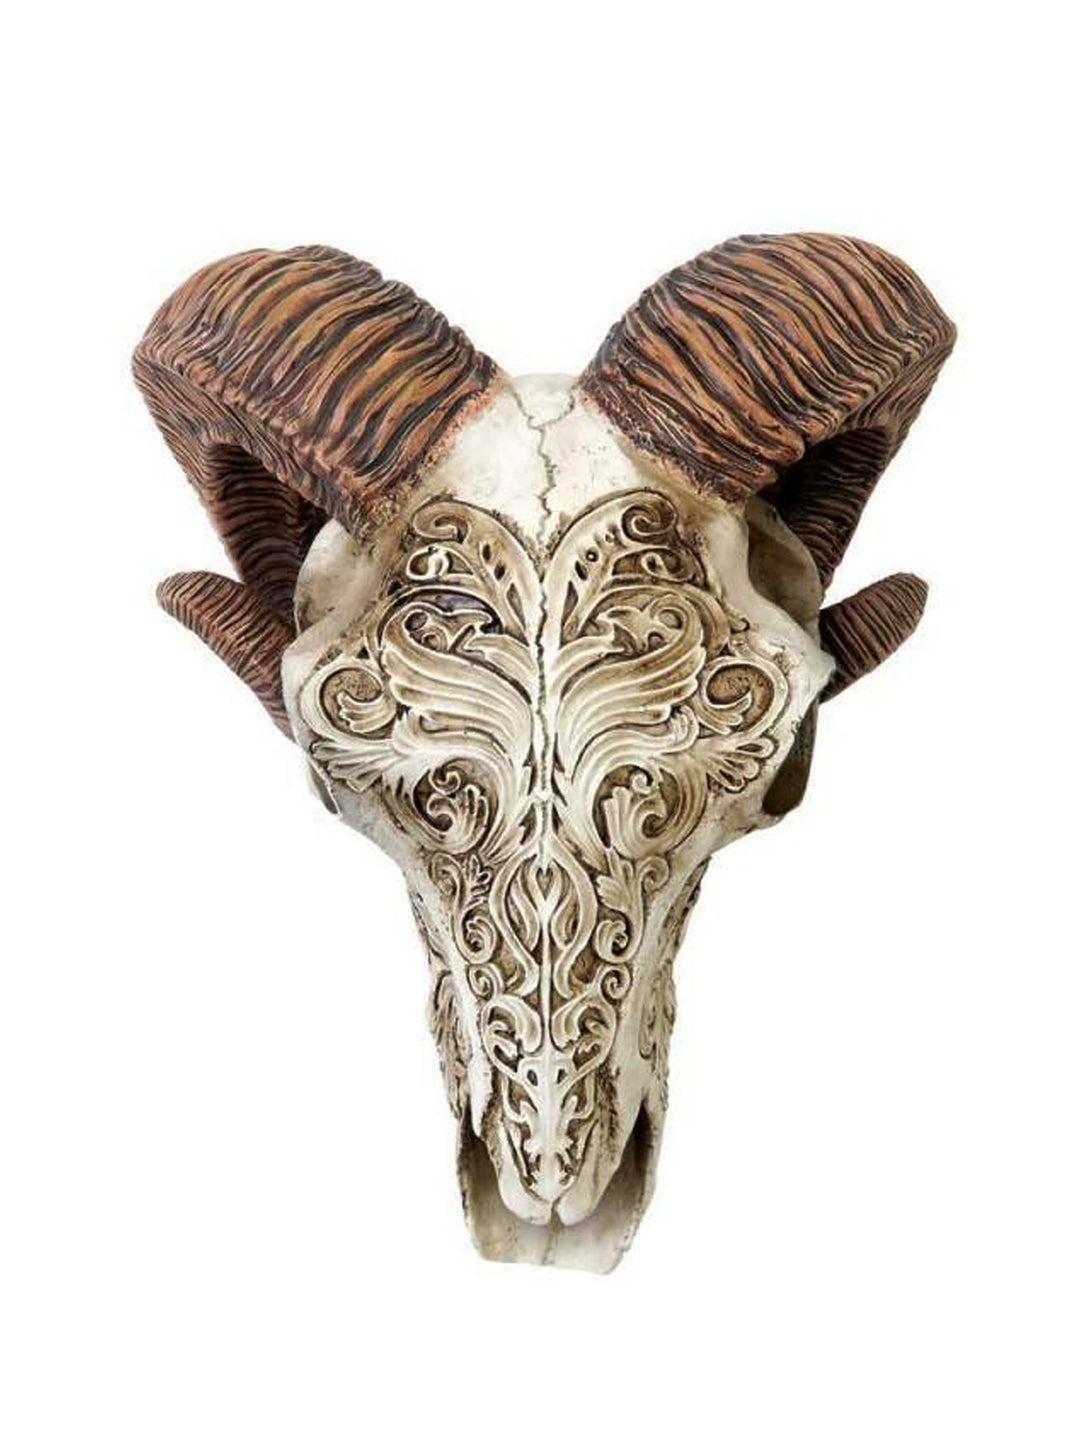 Rams Skull – Horns Of Ammon – Curling Ram Horns Skull